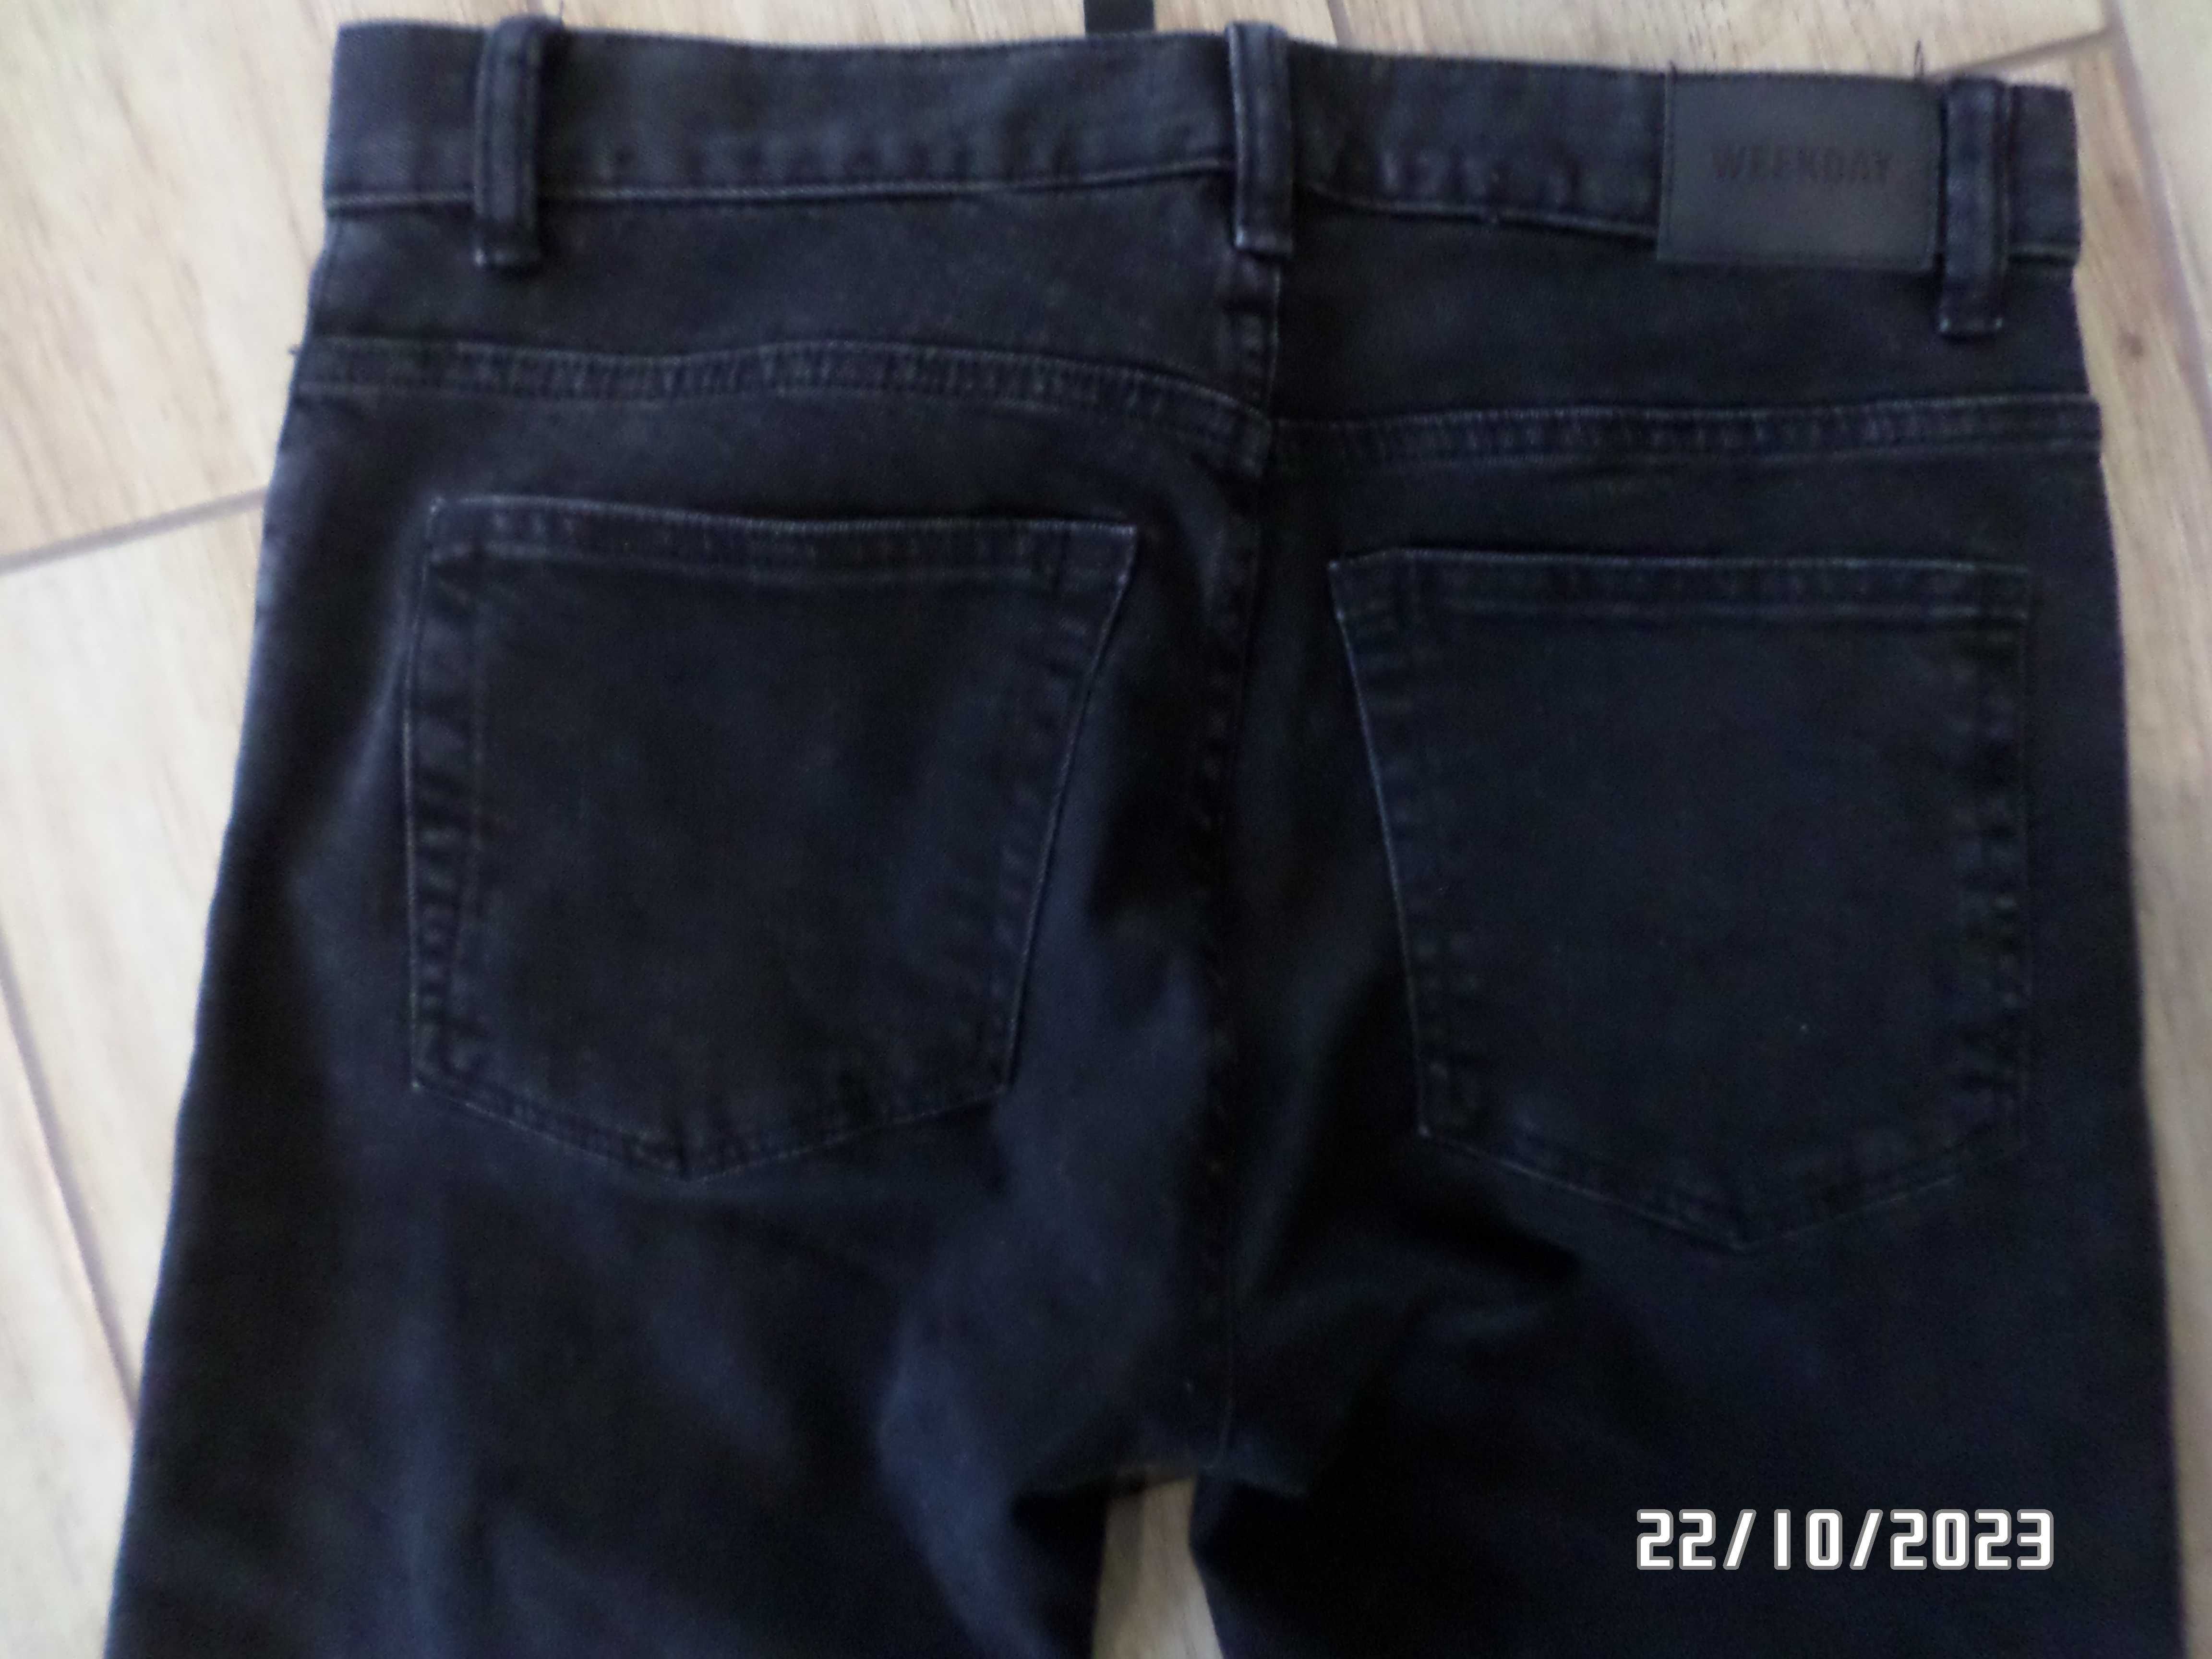 czarne męskie spodnie jeans-s-29/32-elastyczne-pas-80cm